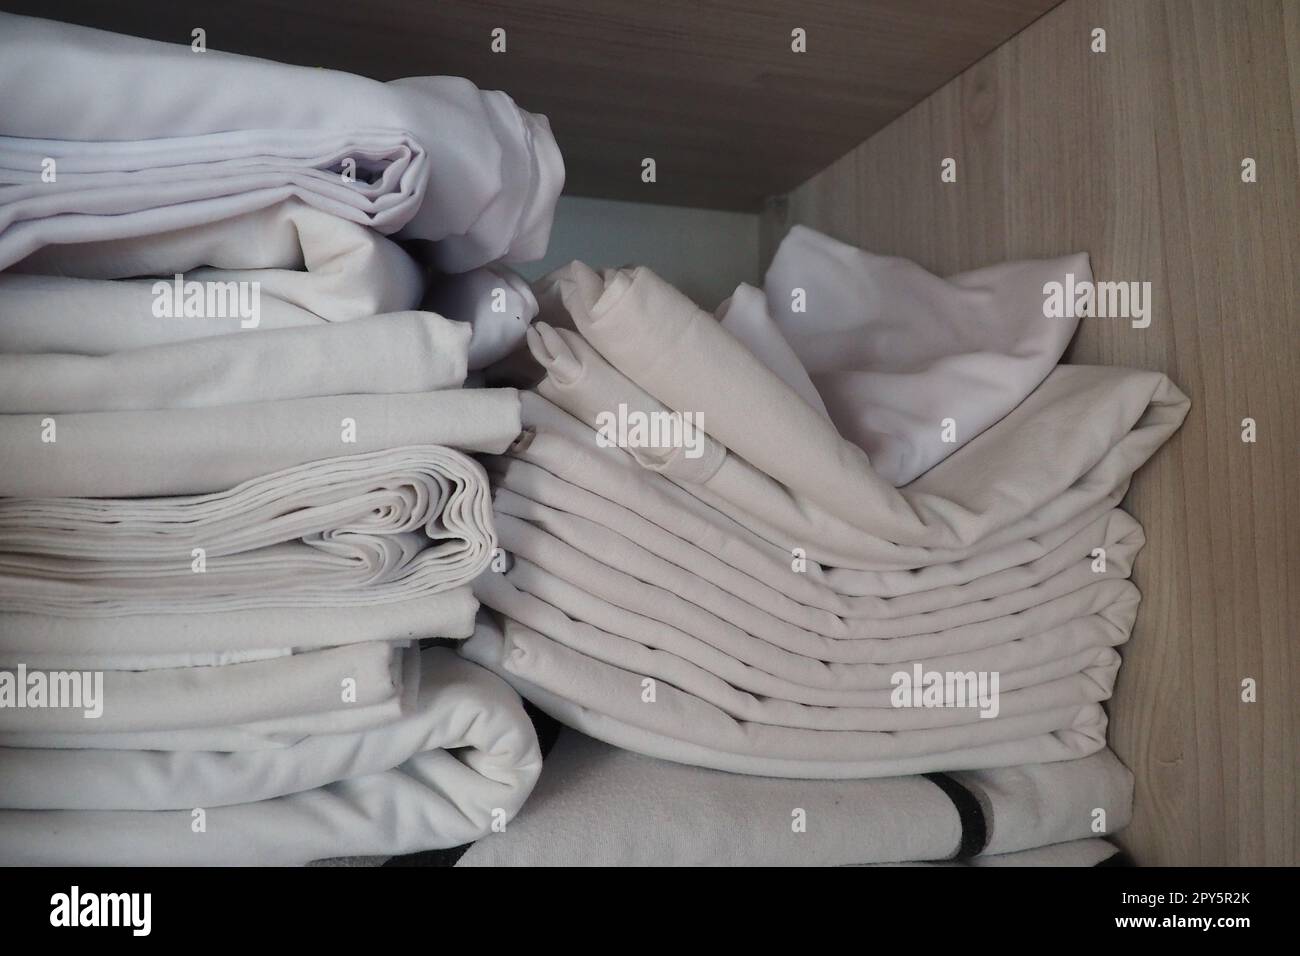 Le lenzuola bianche sono impilate nell'armadio. Contenuto interno di un armadio in lino. Organizzazione familiare. Condizioni igieniche per il sonno. Tessuti e lenzuola in un armadio o guardaroba bianco a metà aperto Foto Stock